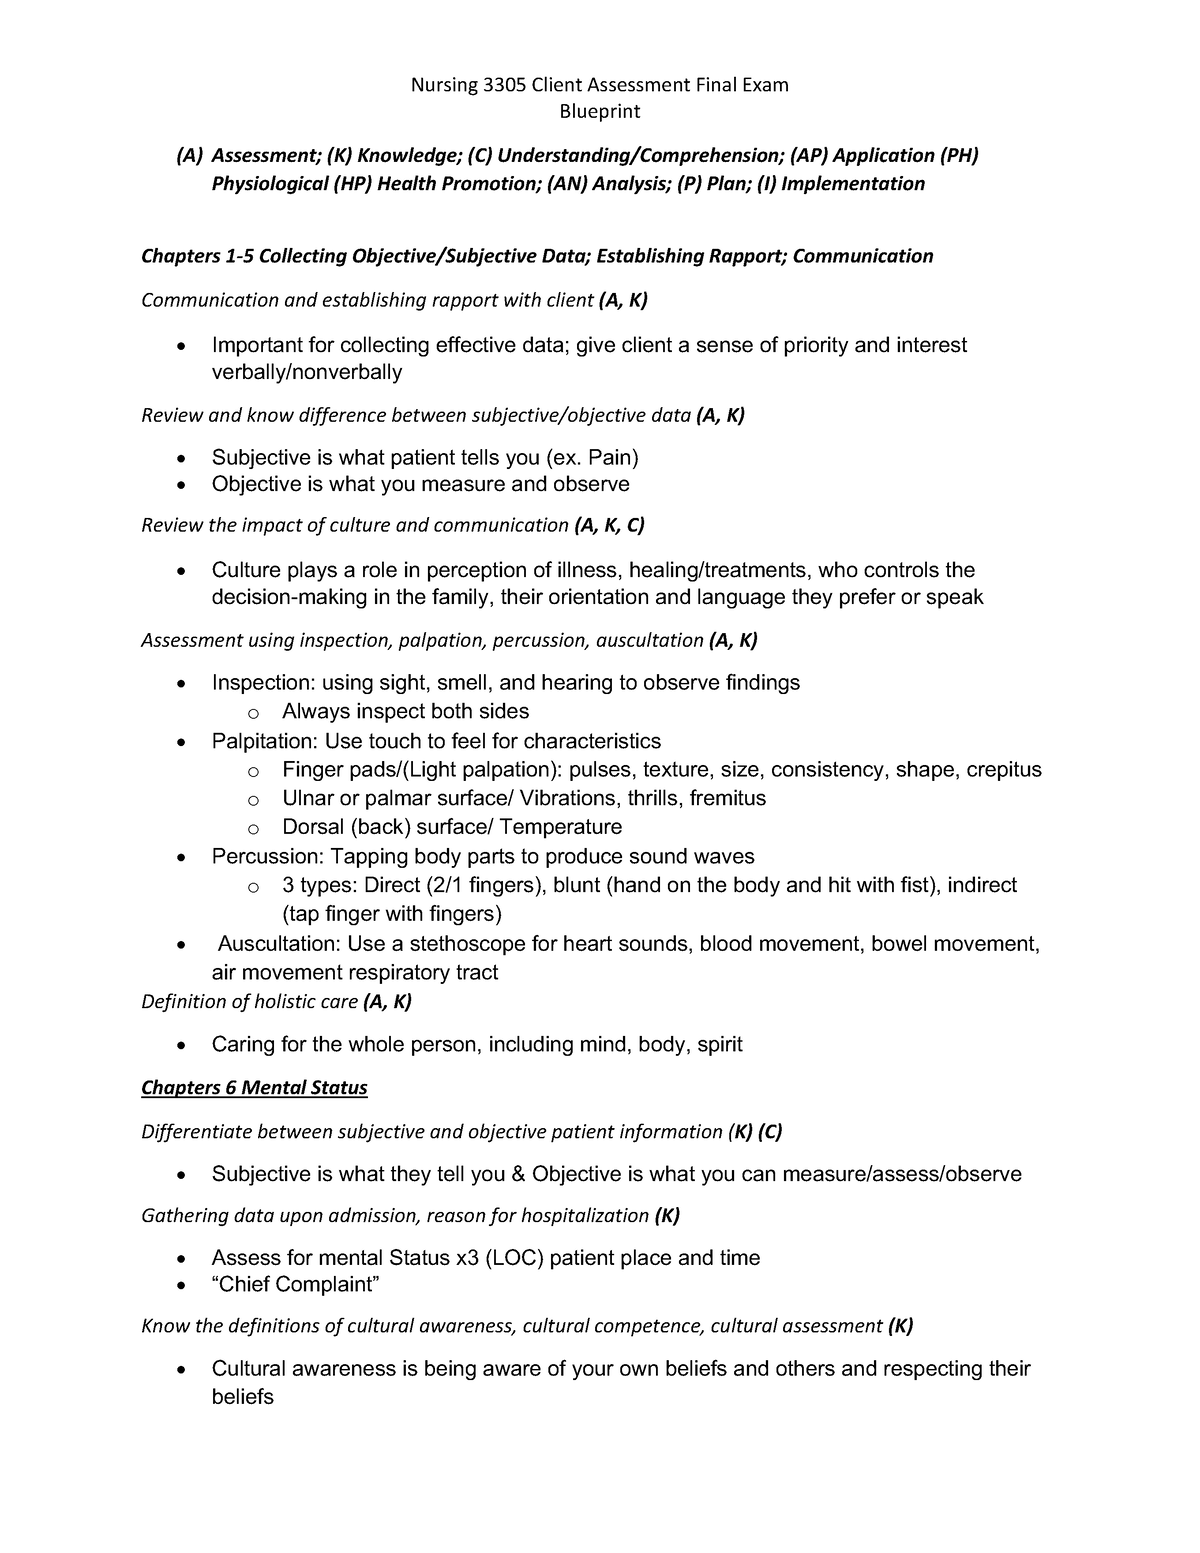 FInal Exam Blueprint Fall 2021 notes - Blueprint (A) Assessment; (K ...